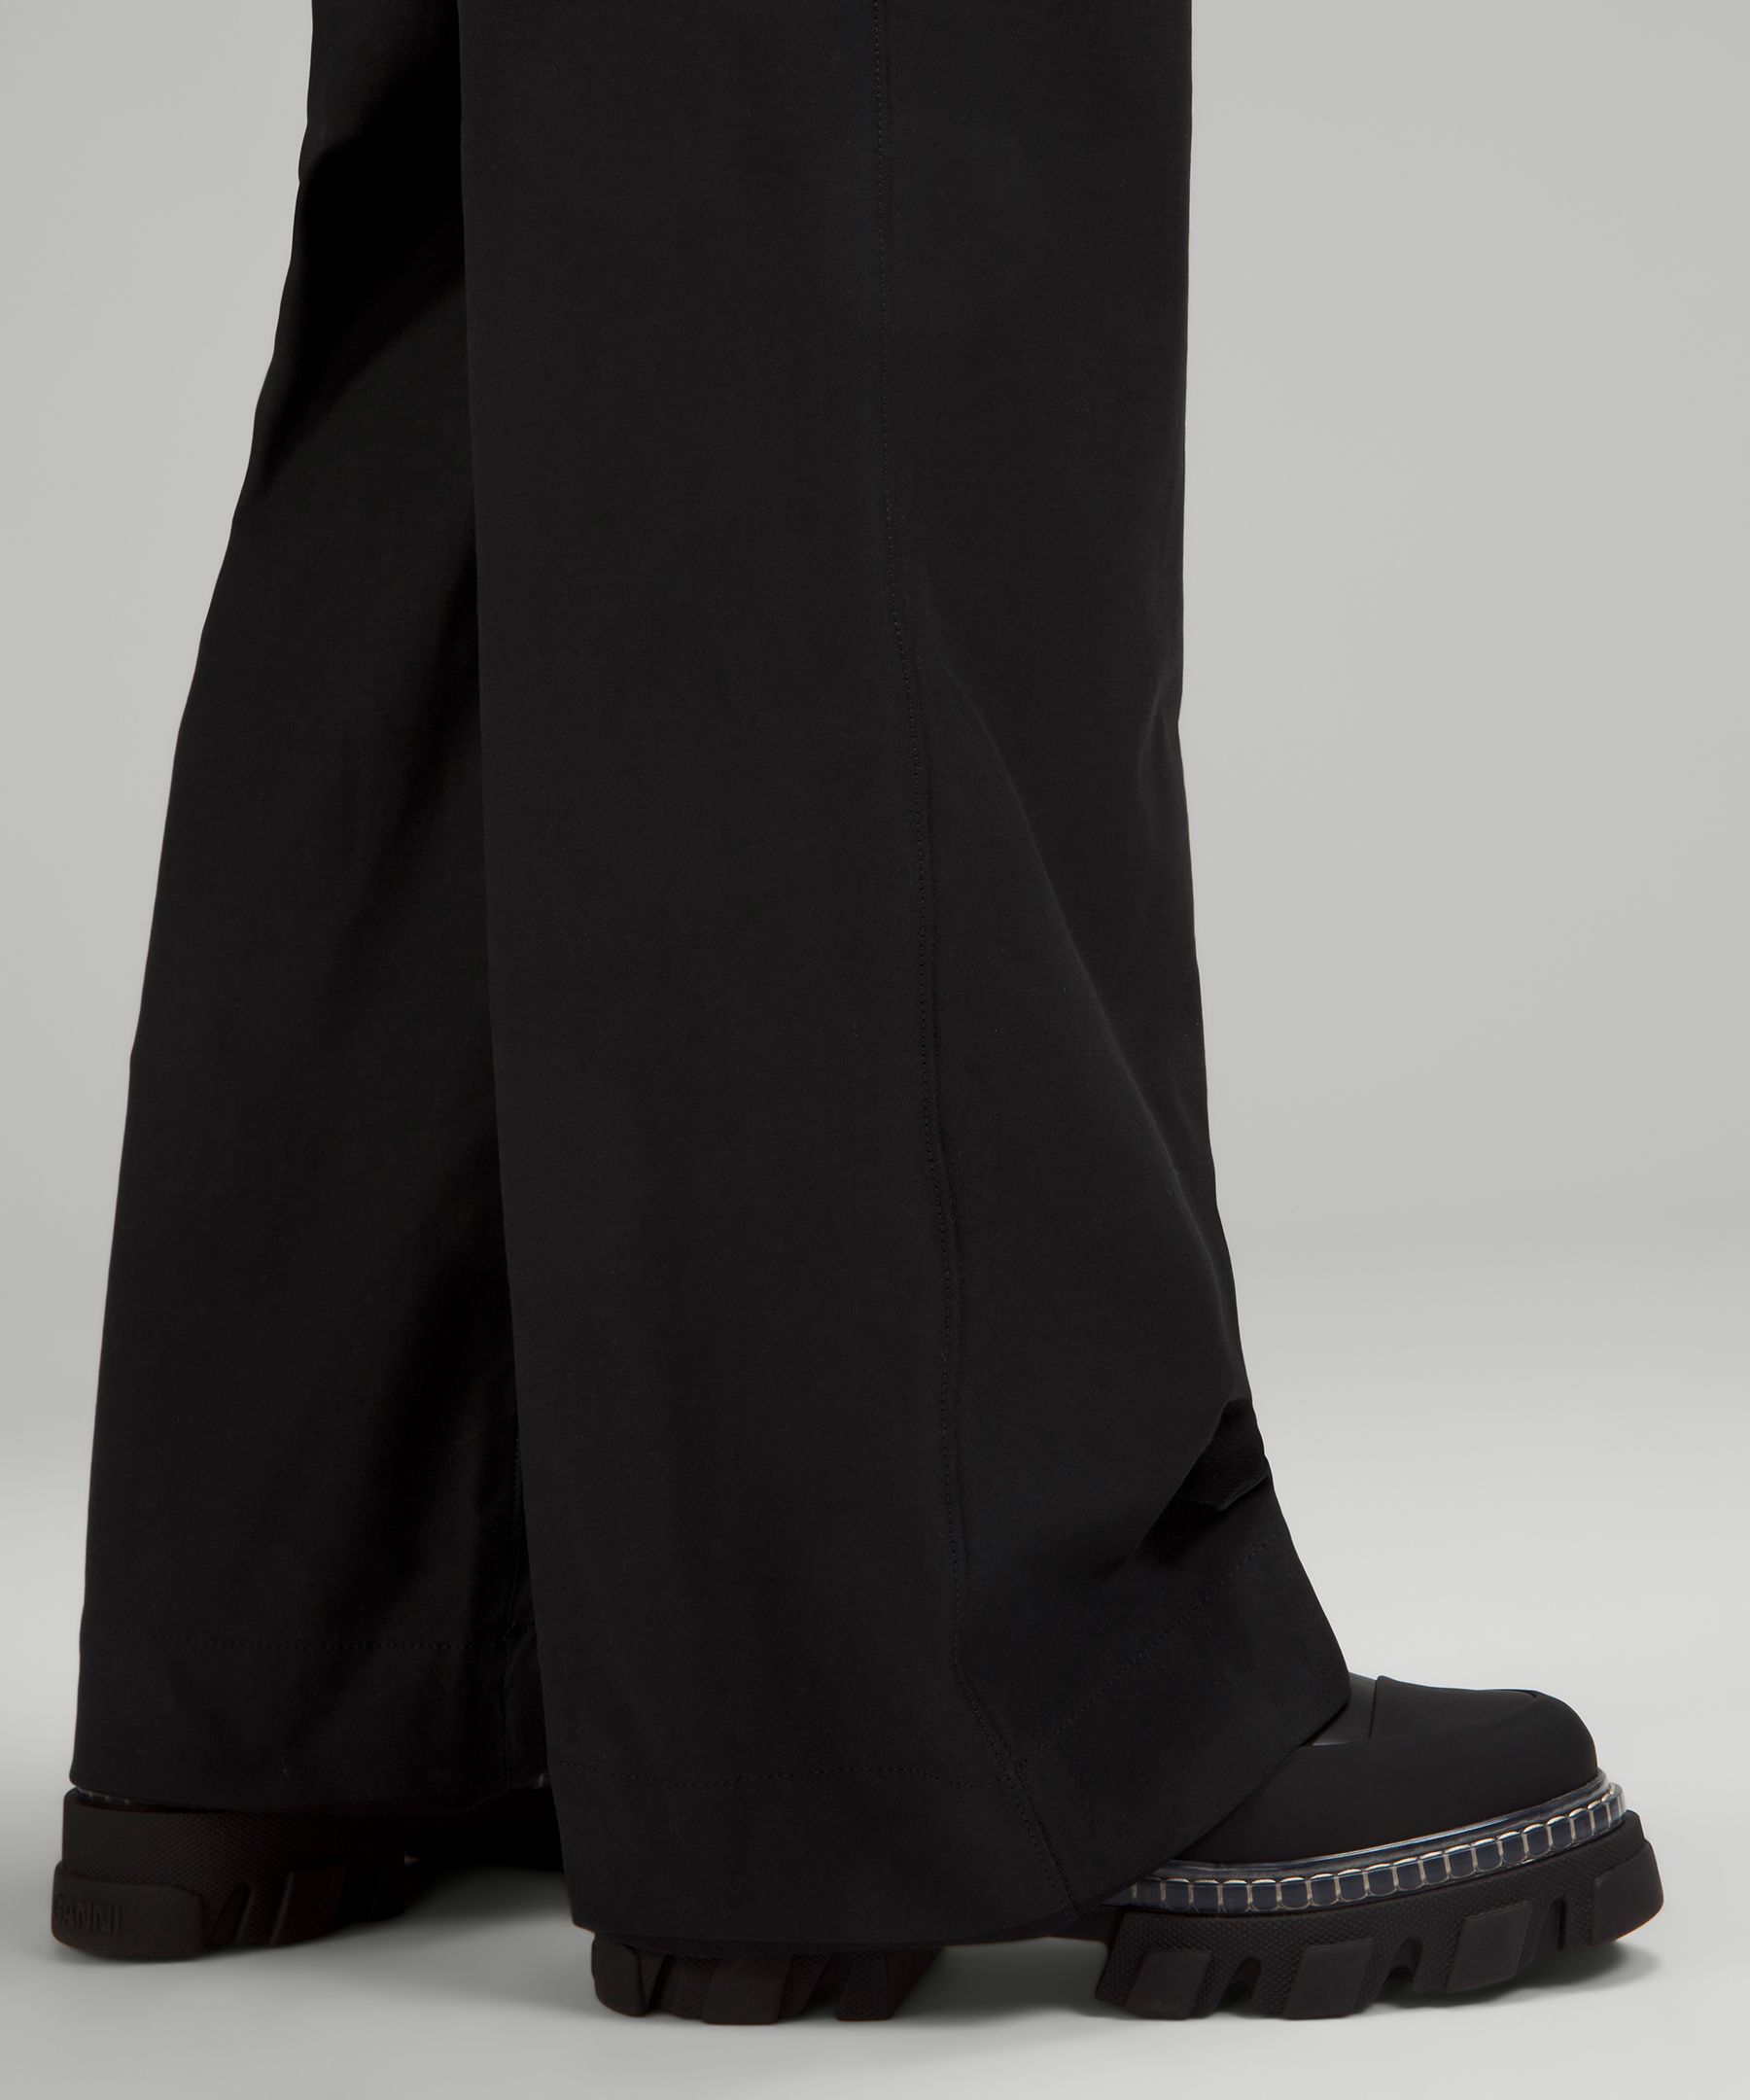 Lululemon City Sleek 5 Pocket High-Rise Wide-Leg Pant Full Length